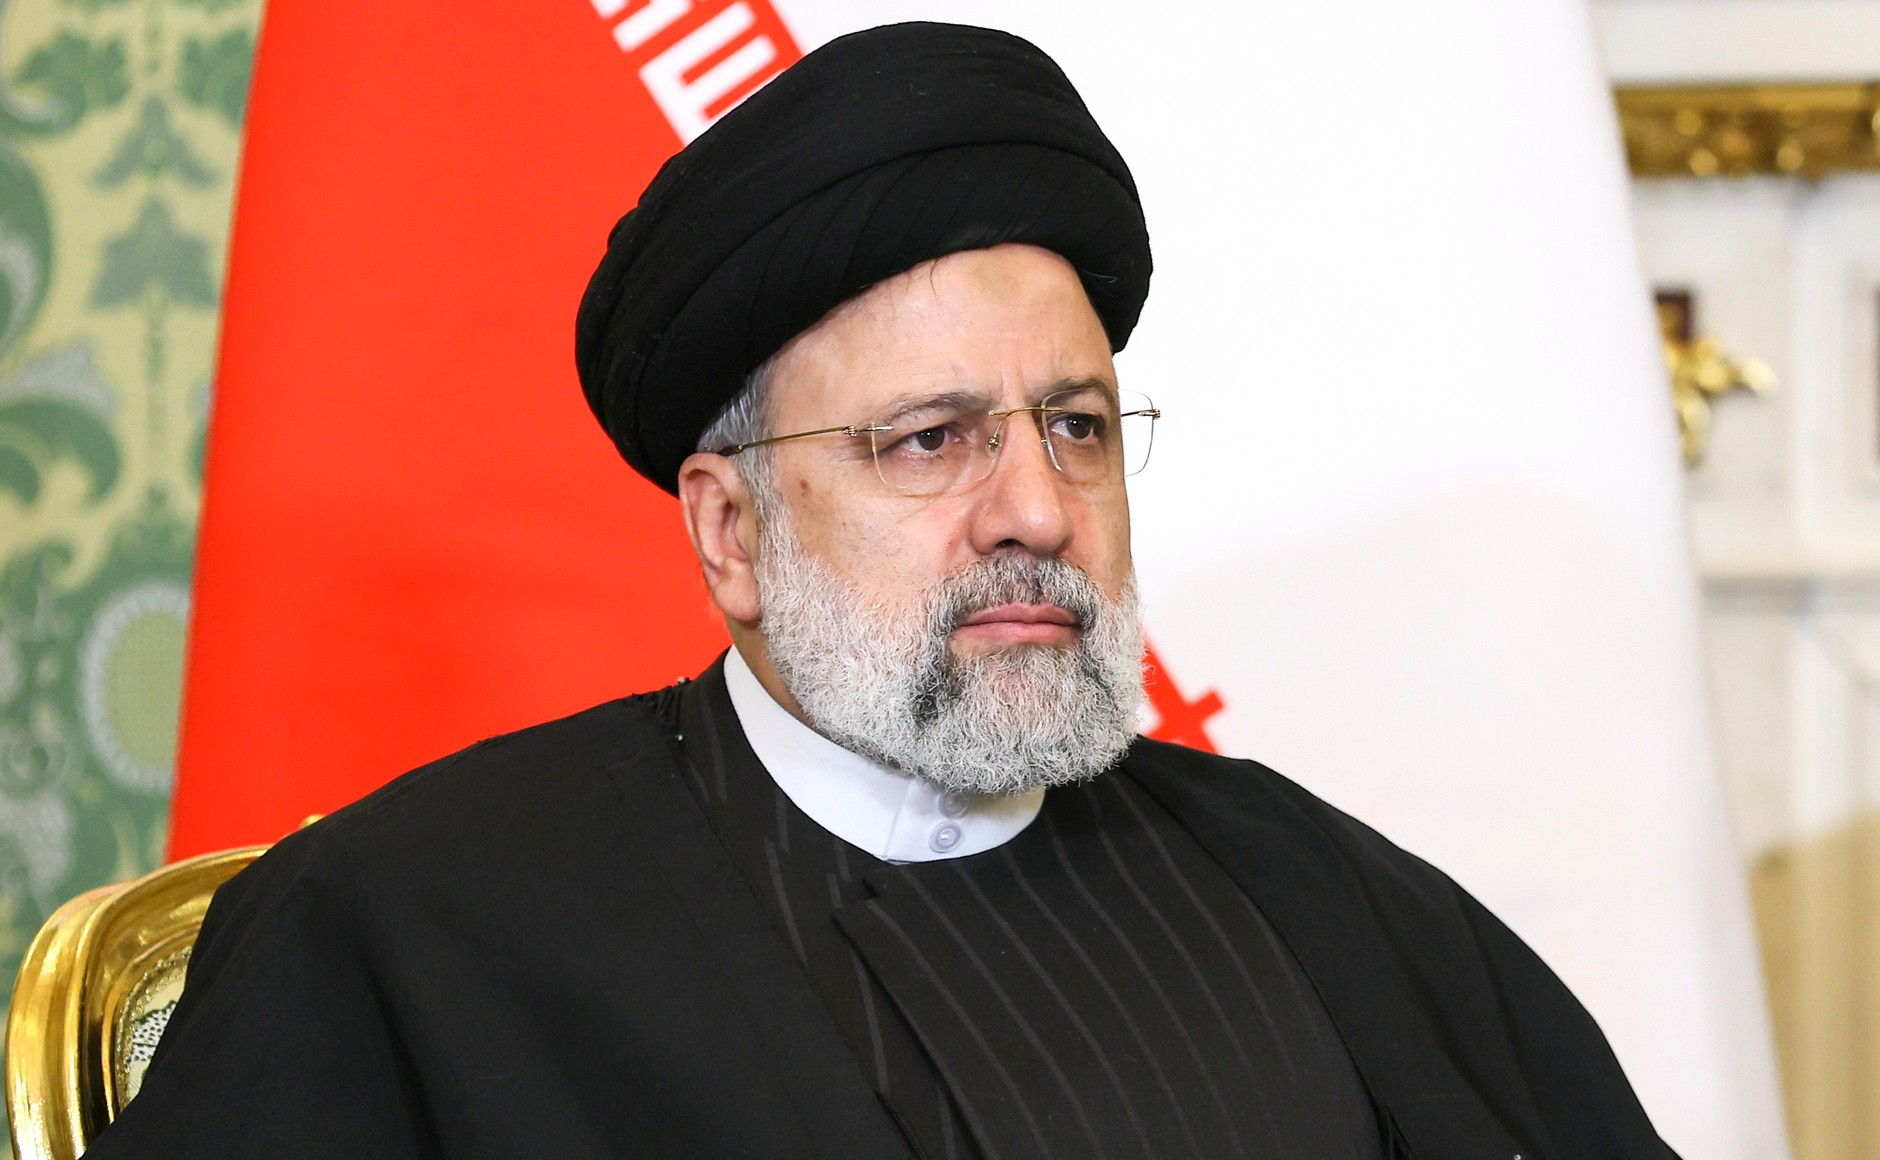 Первый вице-президент Ирана Мохбер временно будет исполнять обязанности Раиси